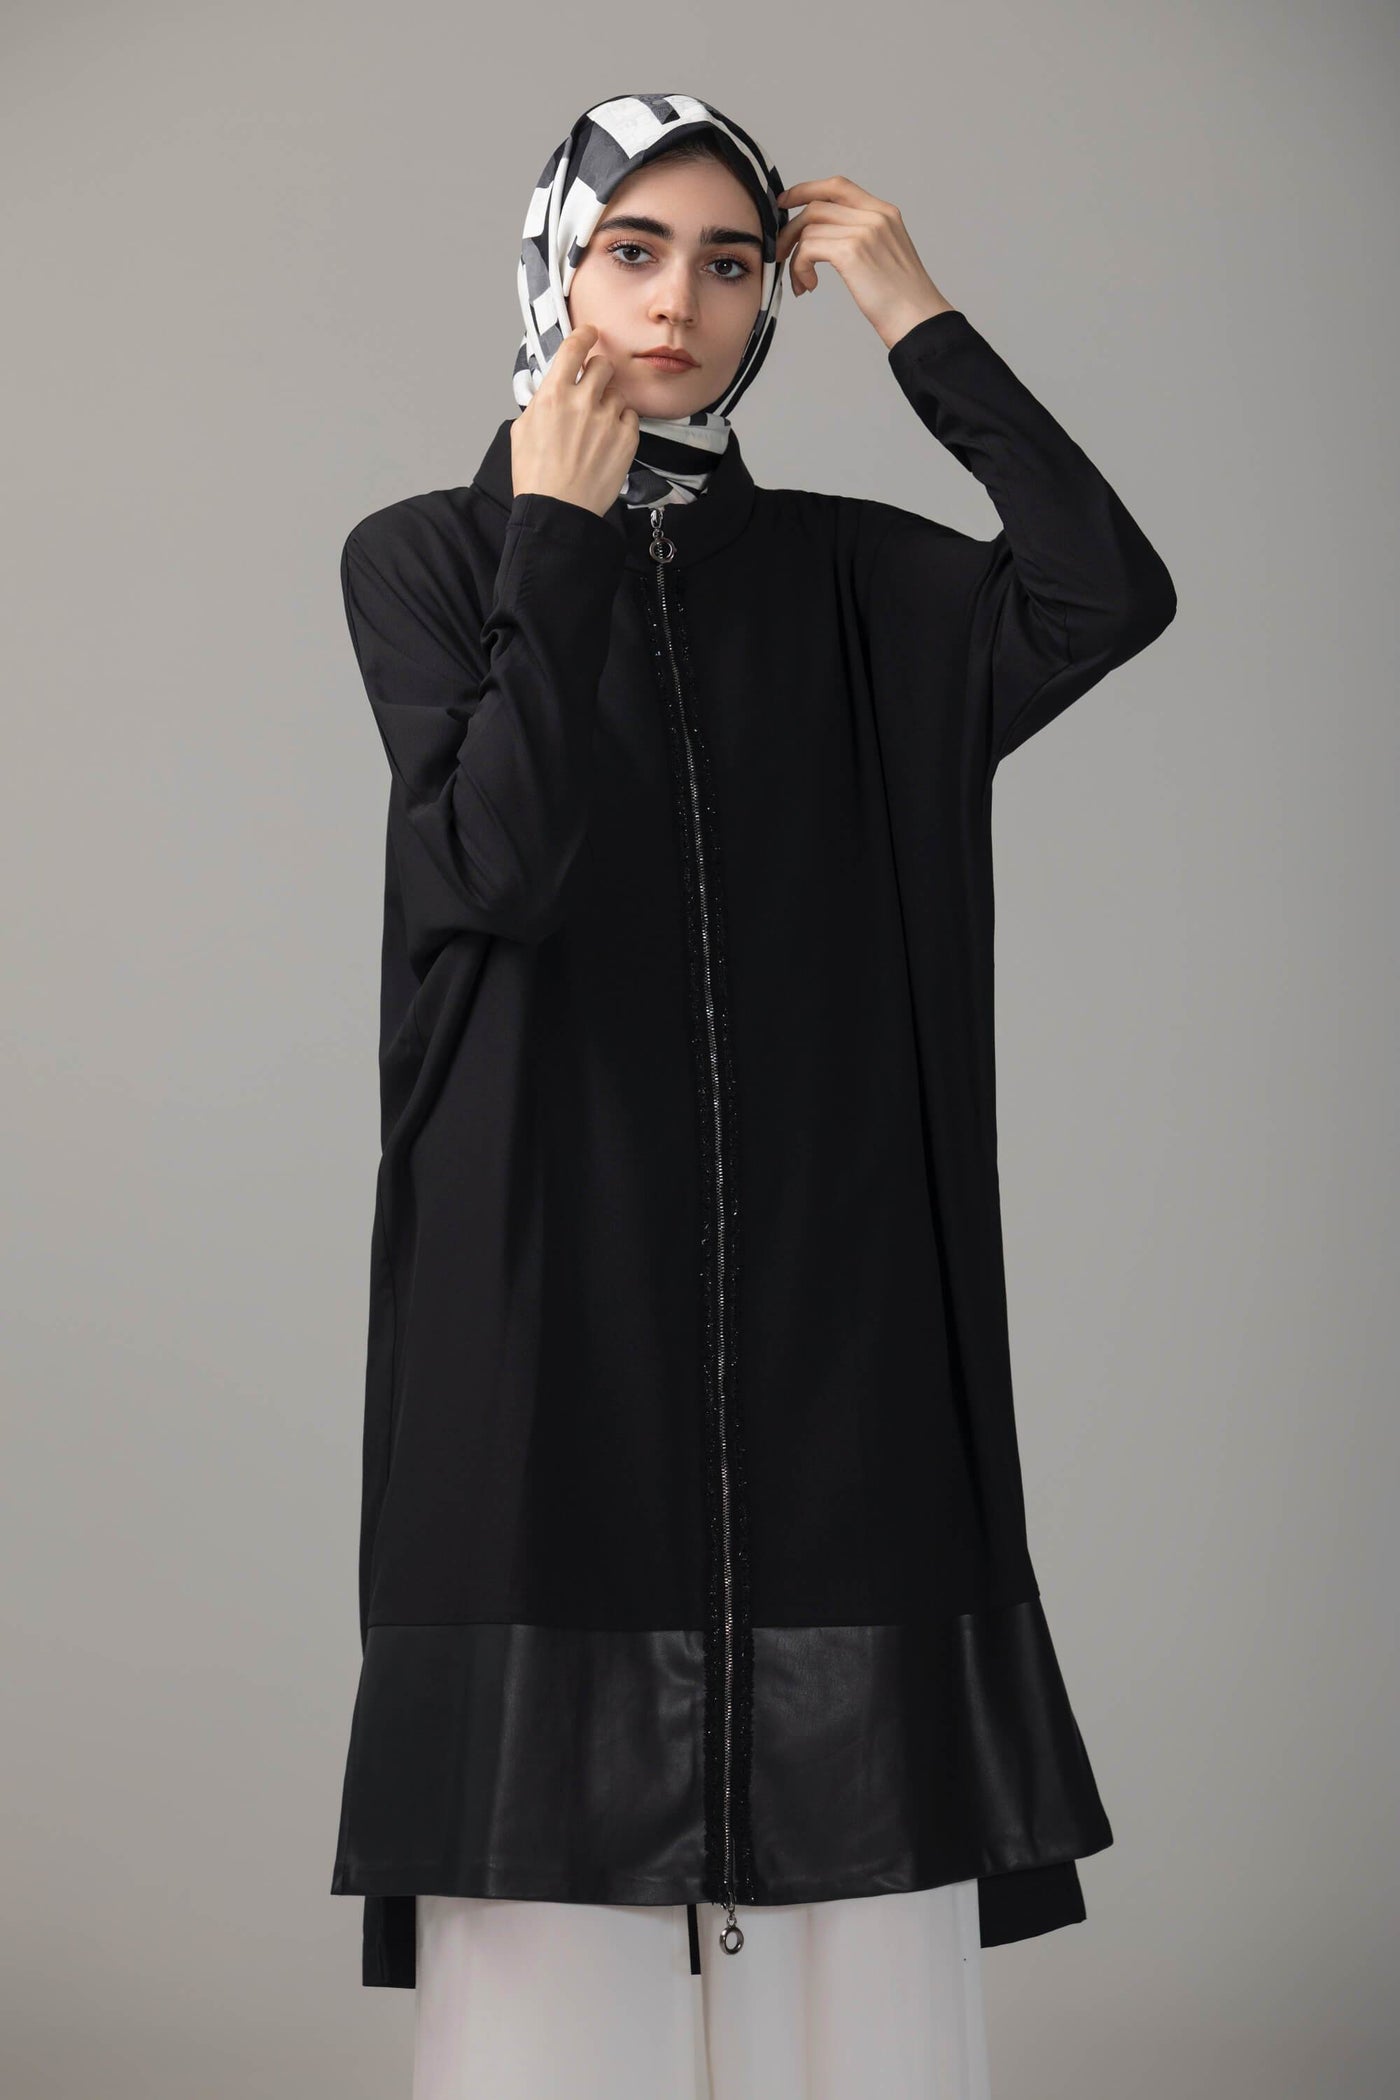 ‘Danah’ Panel Tunic | Black Tunic Dana Fashion 38 